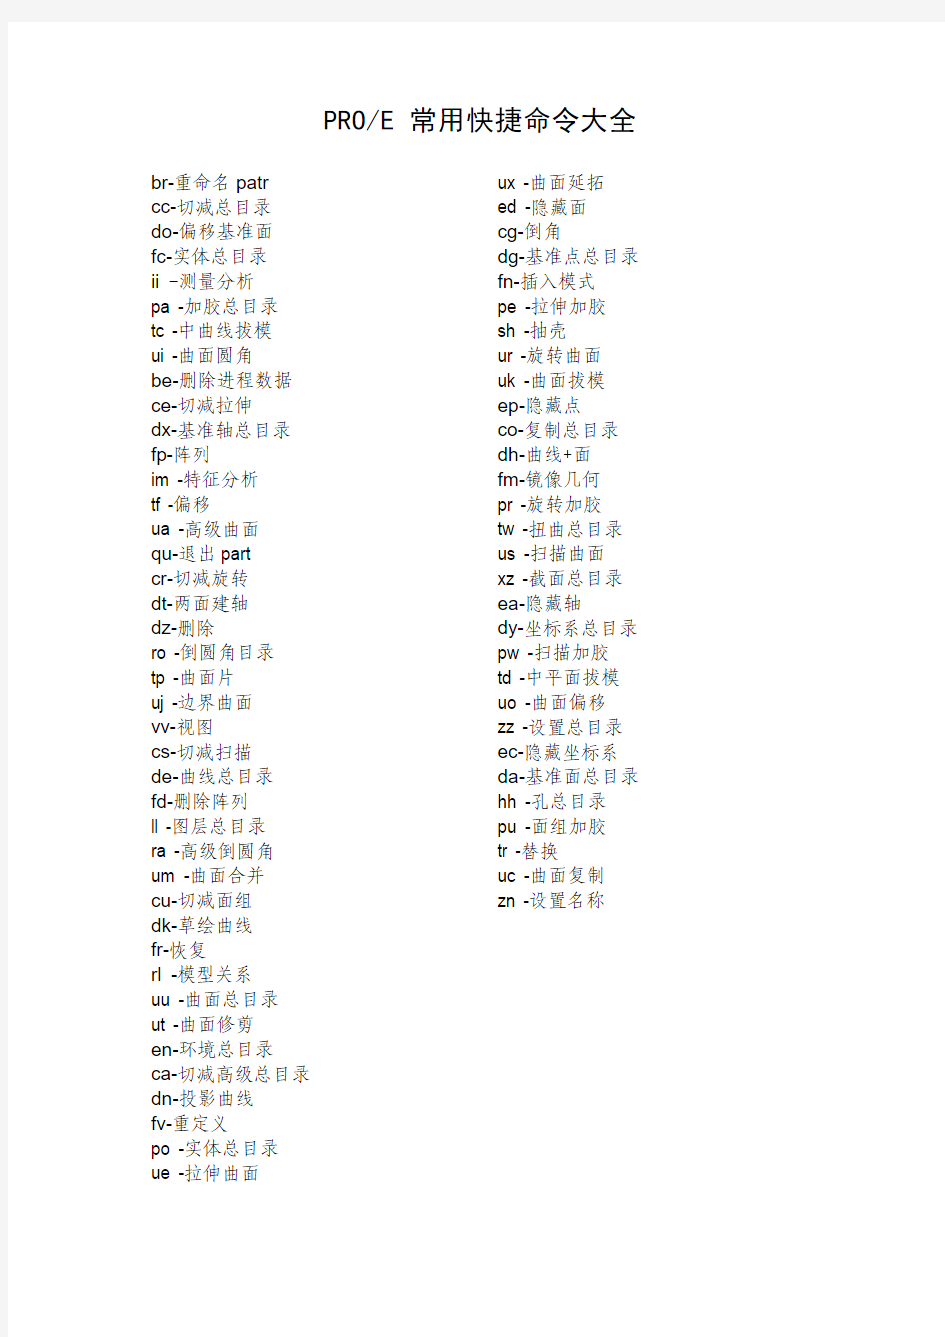 PROE 5.0中文版 常用快捷命令大全